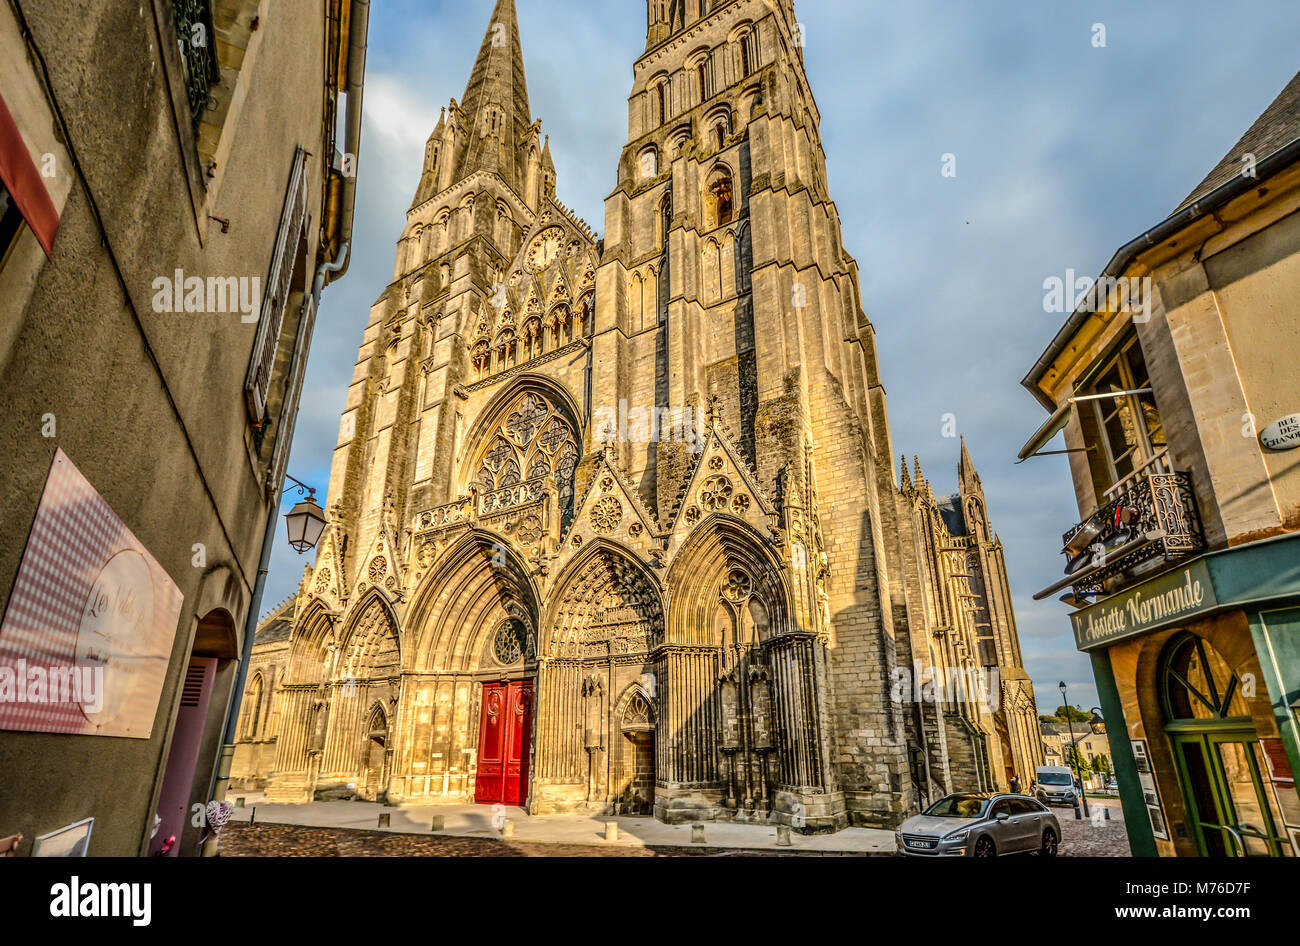 L'impressionnante façade de la cathédrale Notre dame de Bayeux dans la ville de Bayeux France en Normandie sur l'image au début de l'automne Banque D'Images